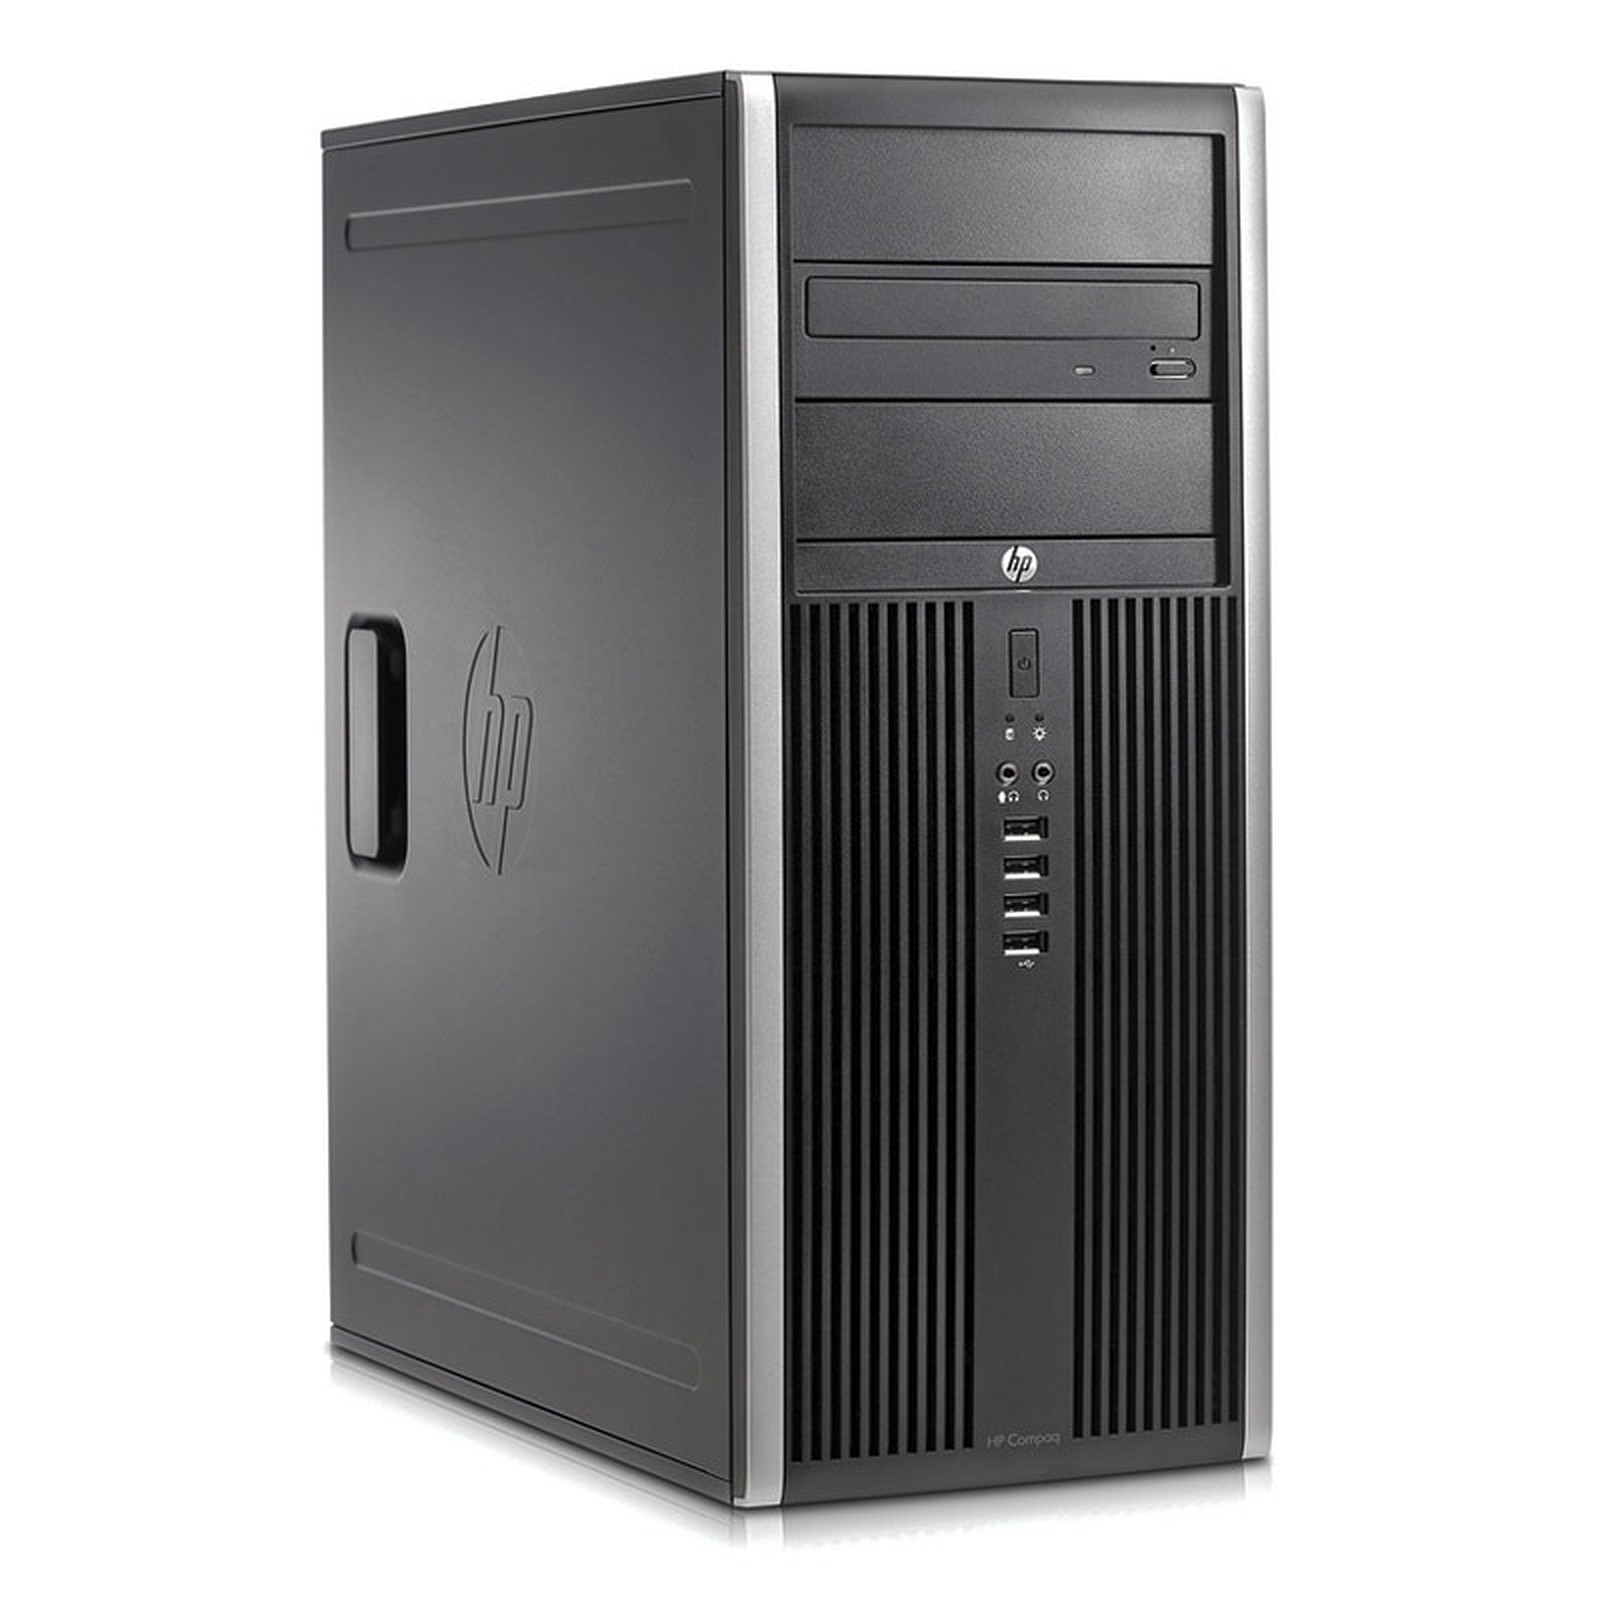 HP Elite 8300 CMT (I7377824S) · Reconditionne - PC de bureau reconditionne HP